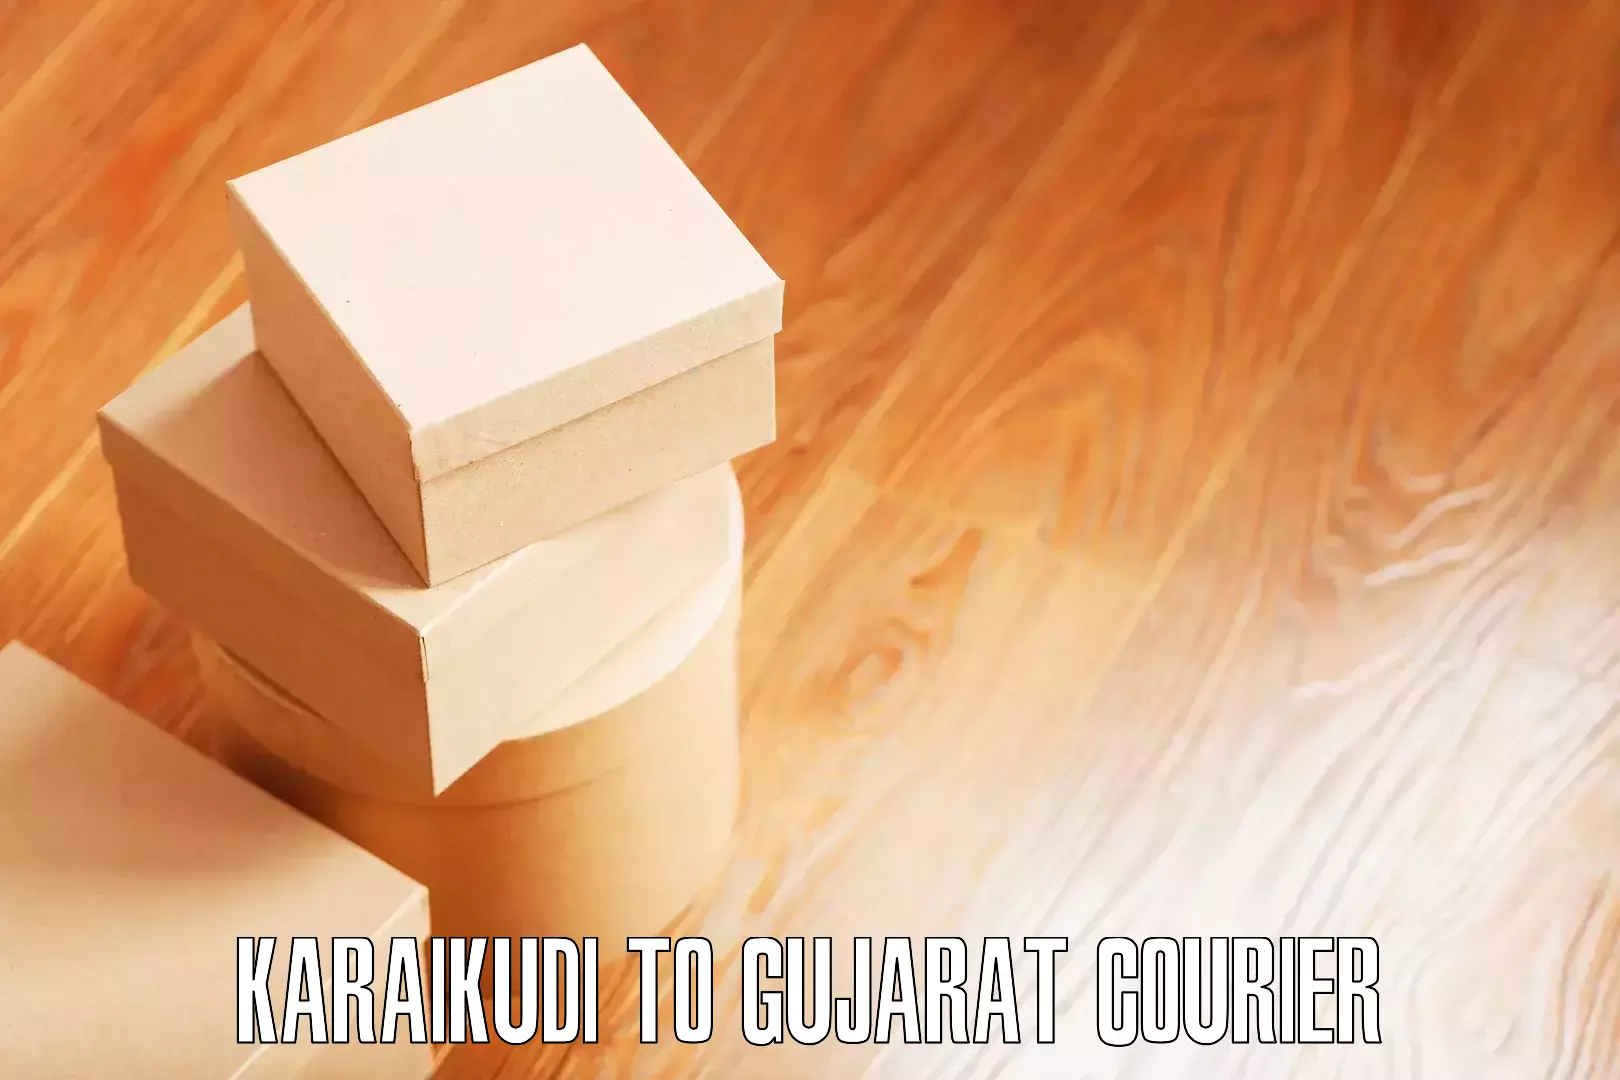 Tailored moving services Karaikudi to Gujarat